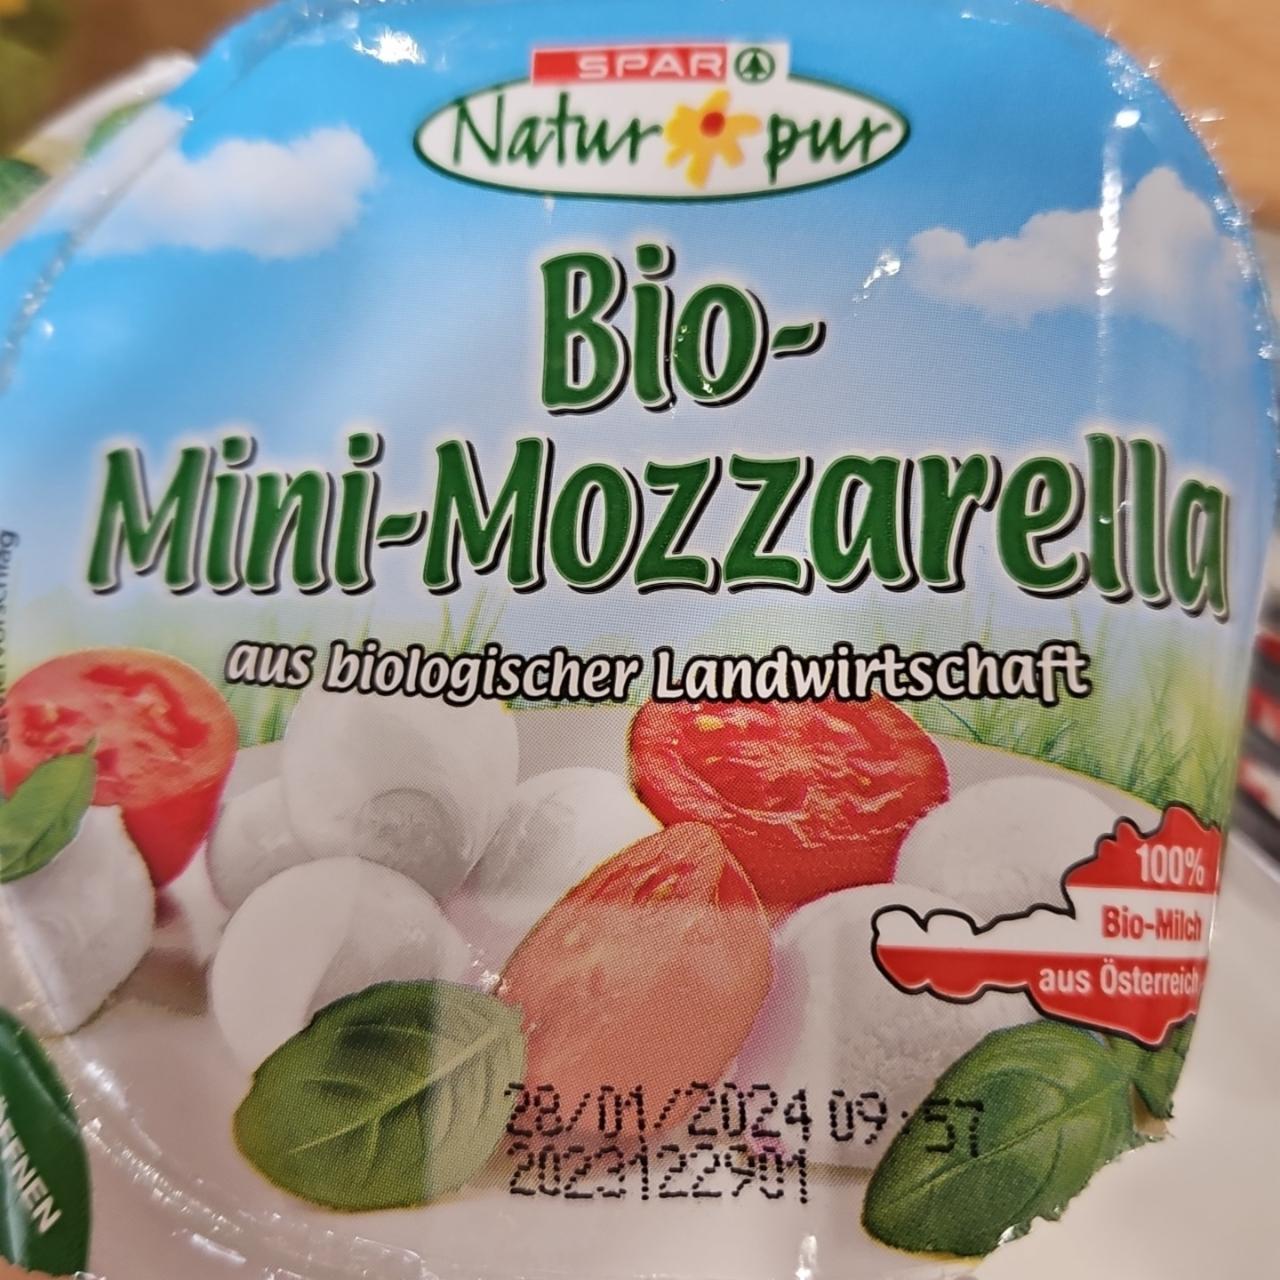 Fotografie - Bio-Mini-Mozzarella Spar Natur pur